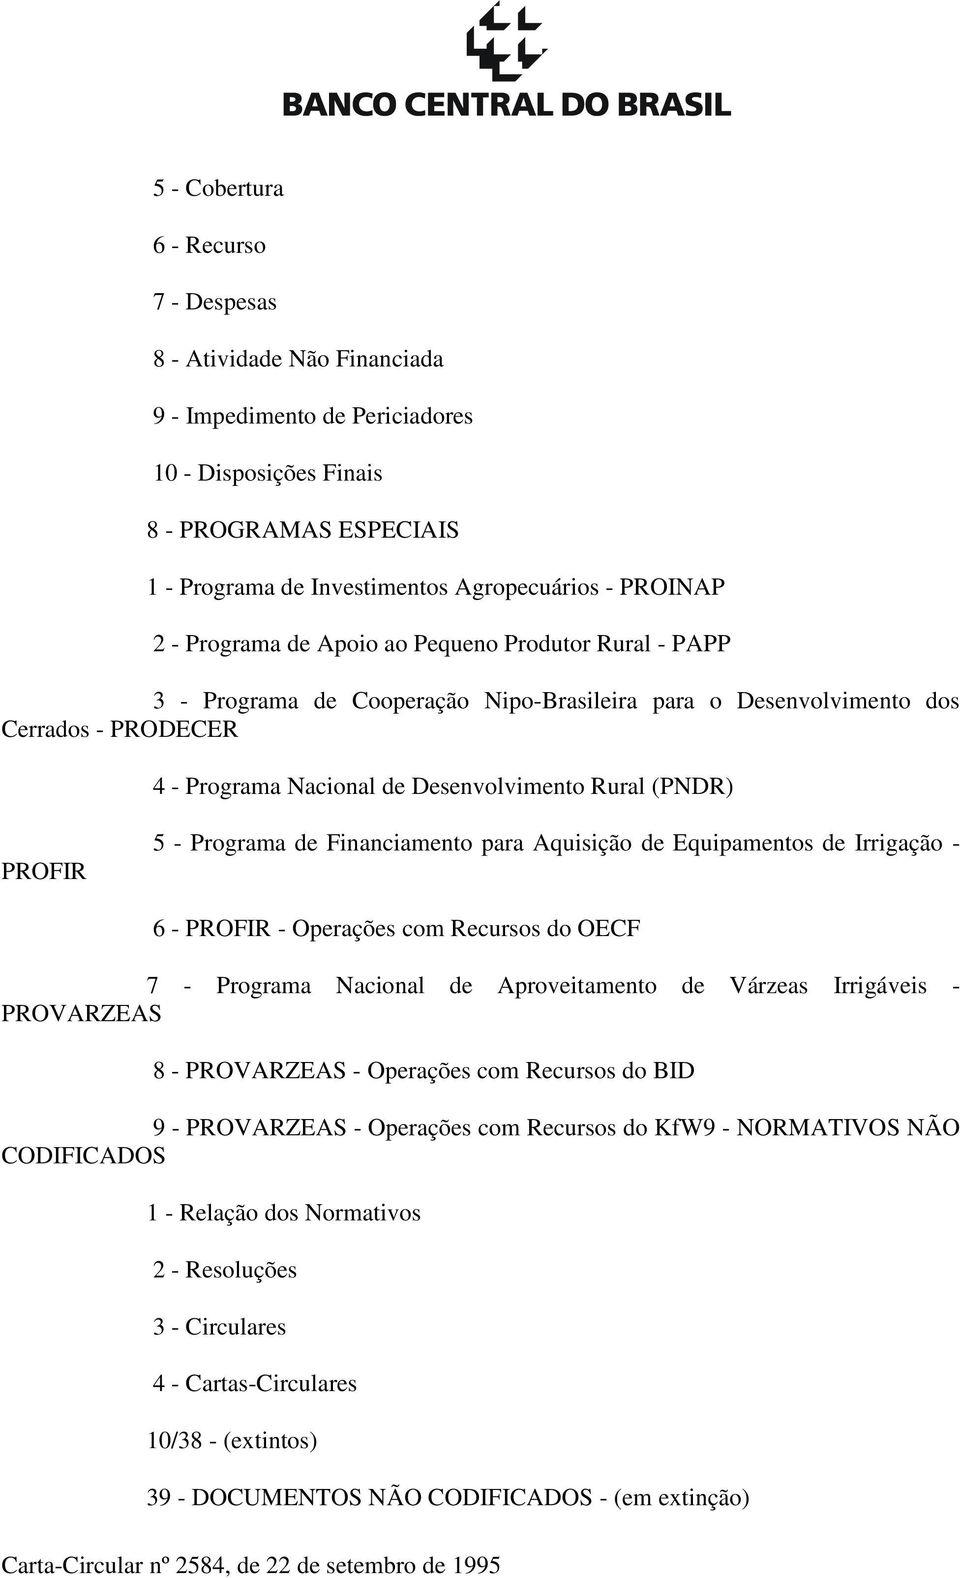 (PNDR) PROFIR 5 - Programa de Financiamento para Aquisição de Equipamentos de Irrigação - 6 - PROFIR - Operações com Recursos do OECF 7 - Programa Nacional de Aproveitamento de Várzeas Irrigáveis -